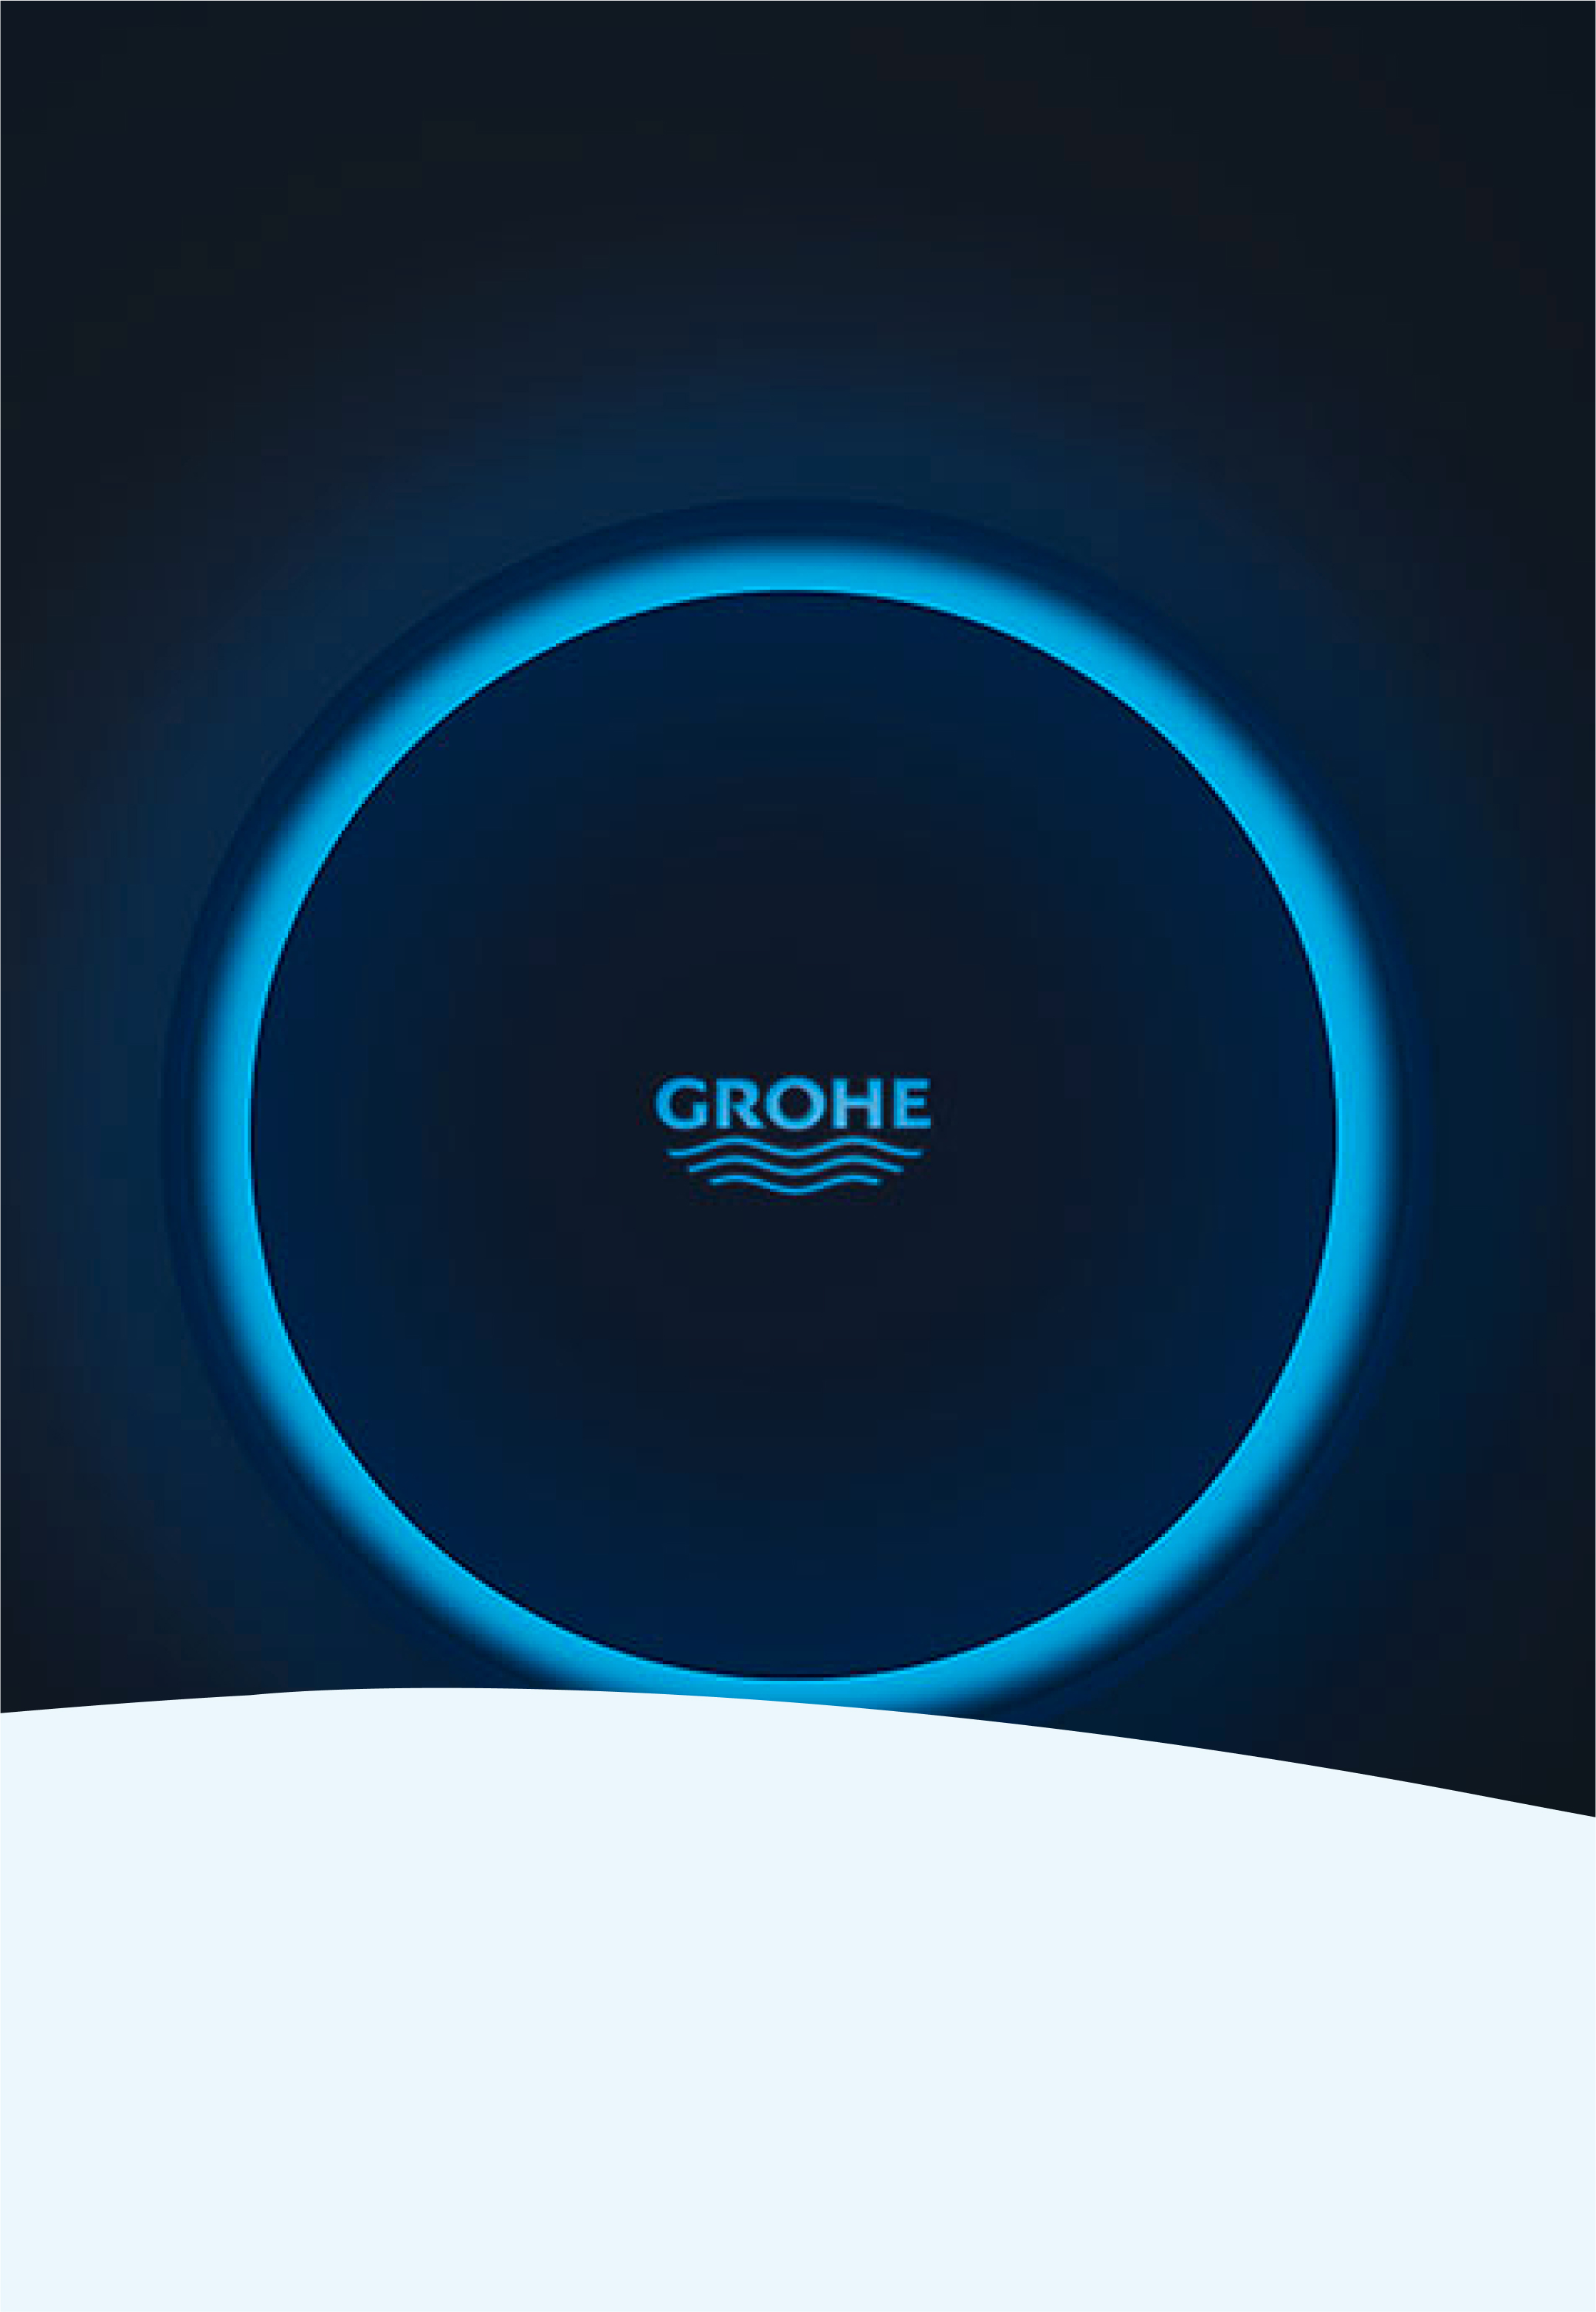 Grohe Pillar -Technology